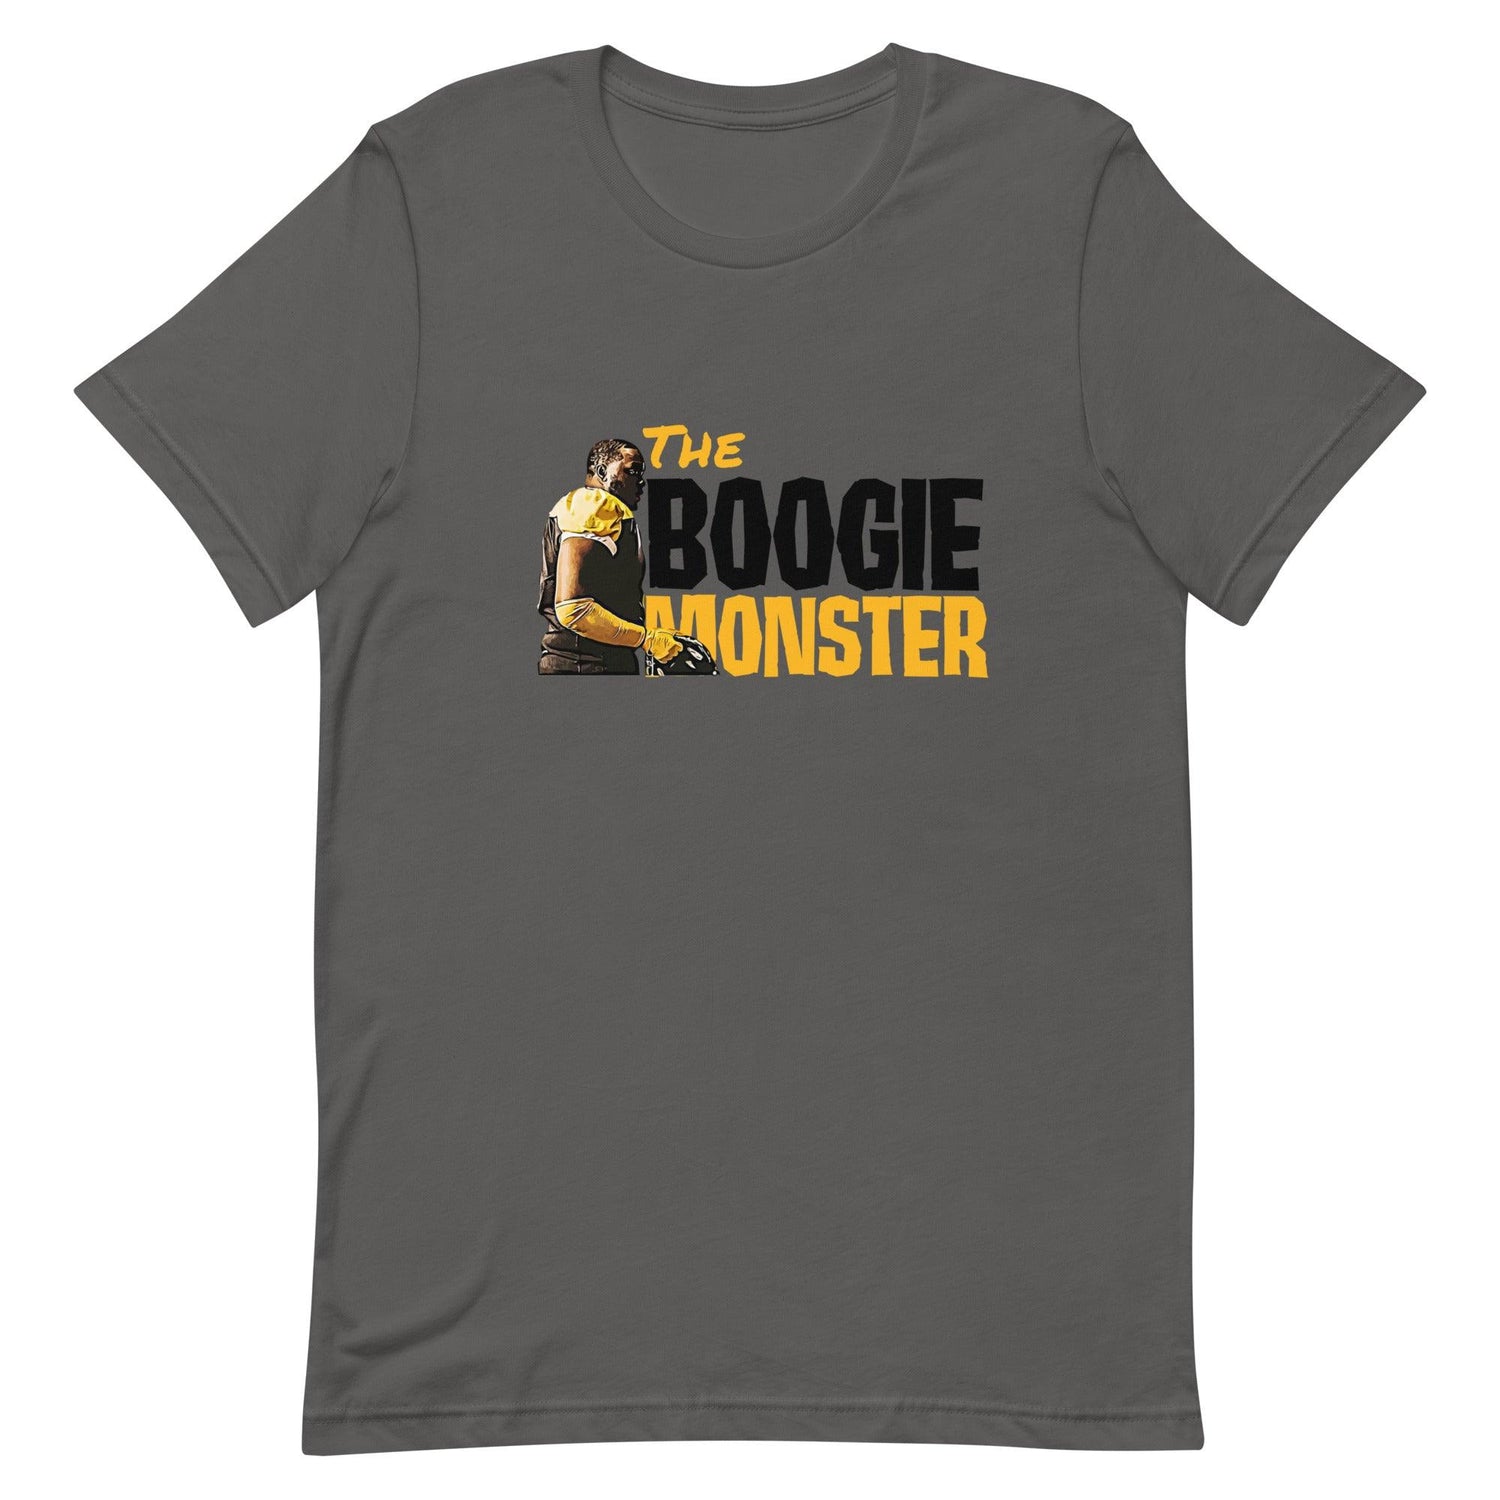 Boogie Roberts "Monster" t-shirt - Fan Arch